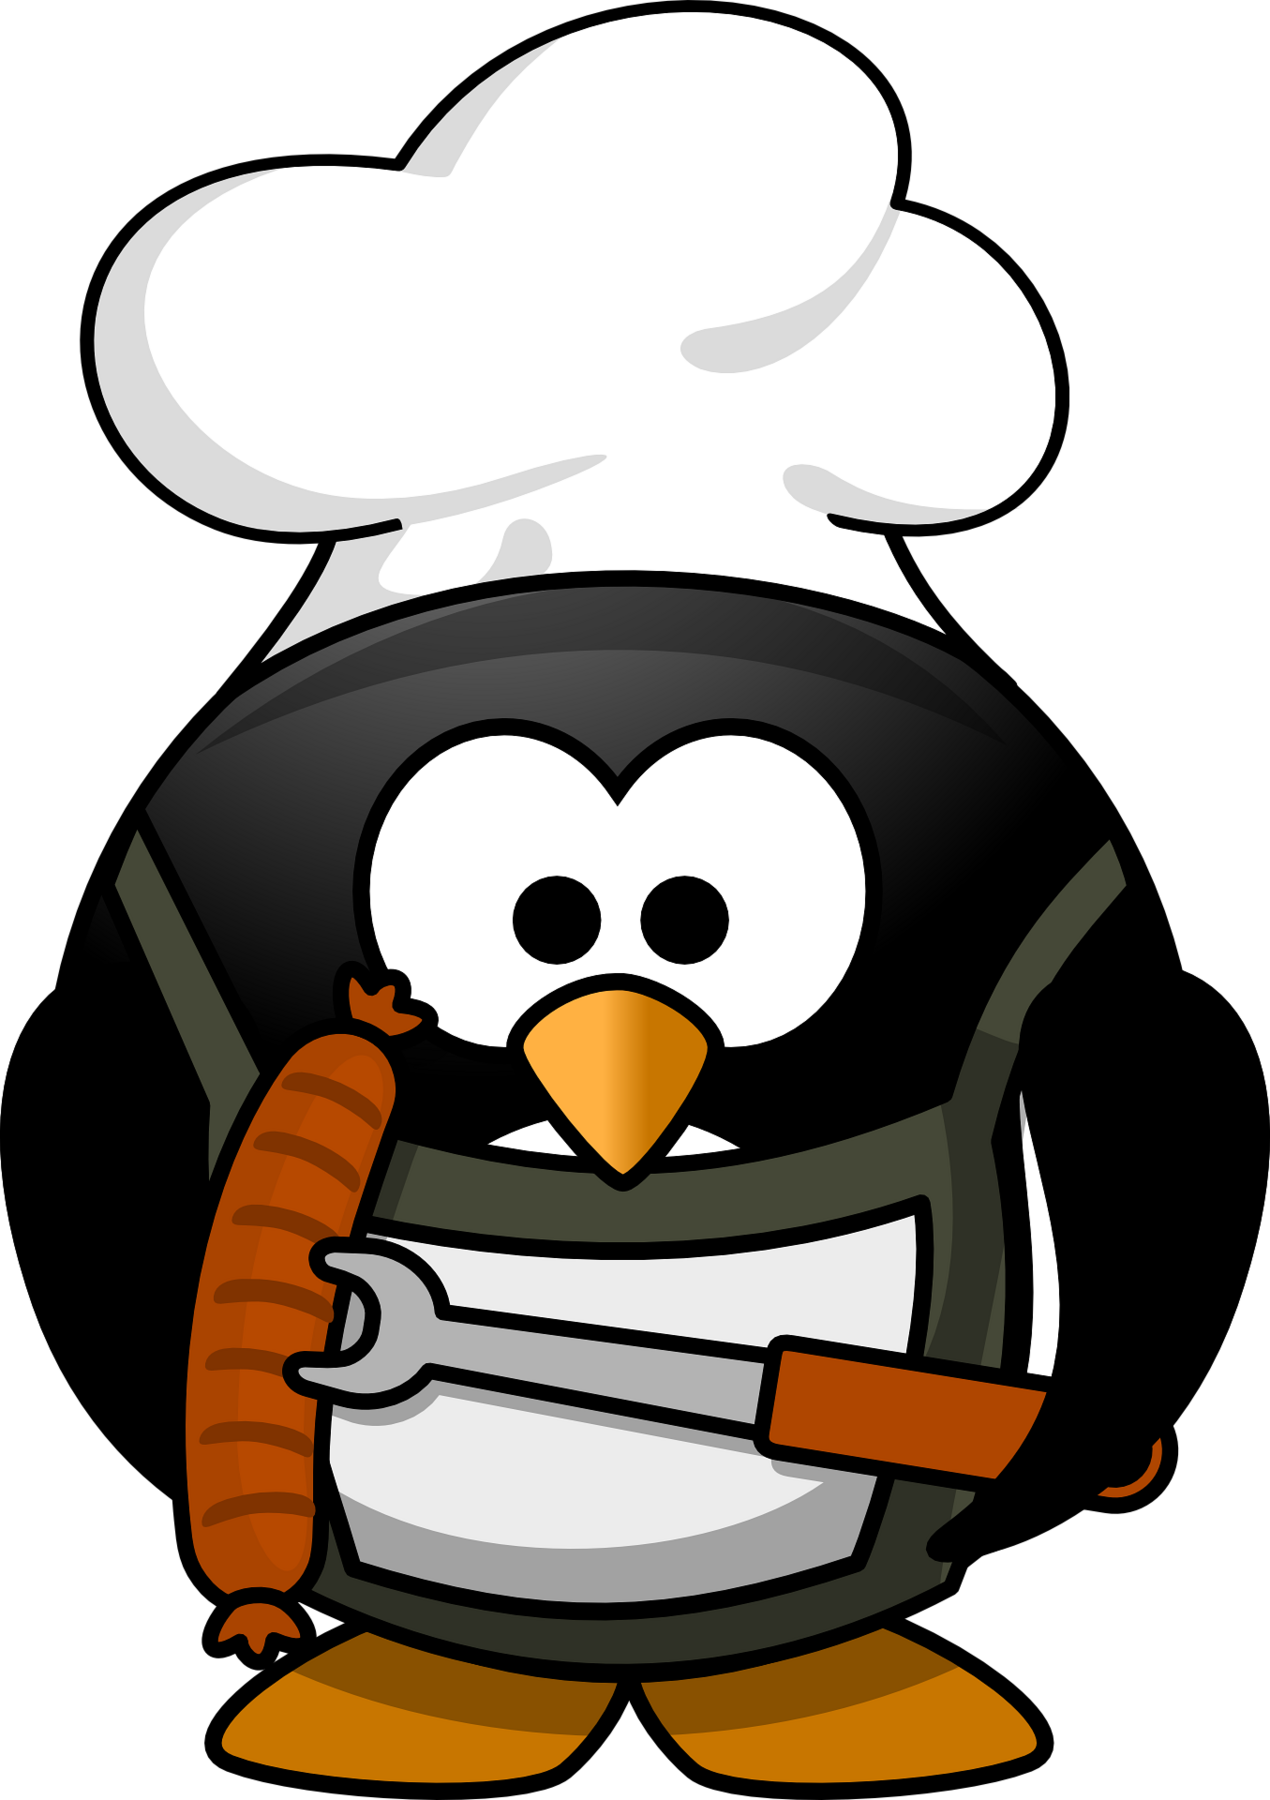 Pinguin mit Kochmütze und Bratwurst in der Hand